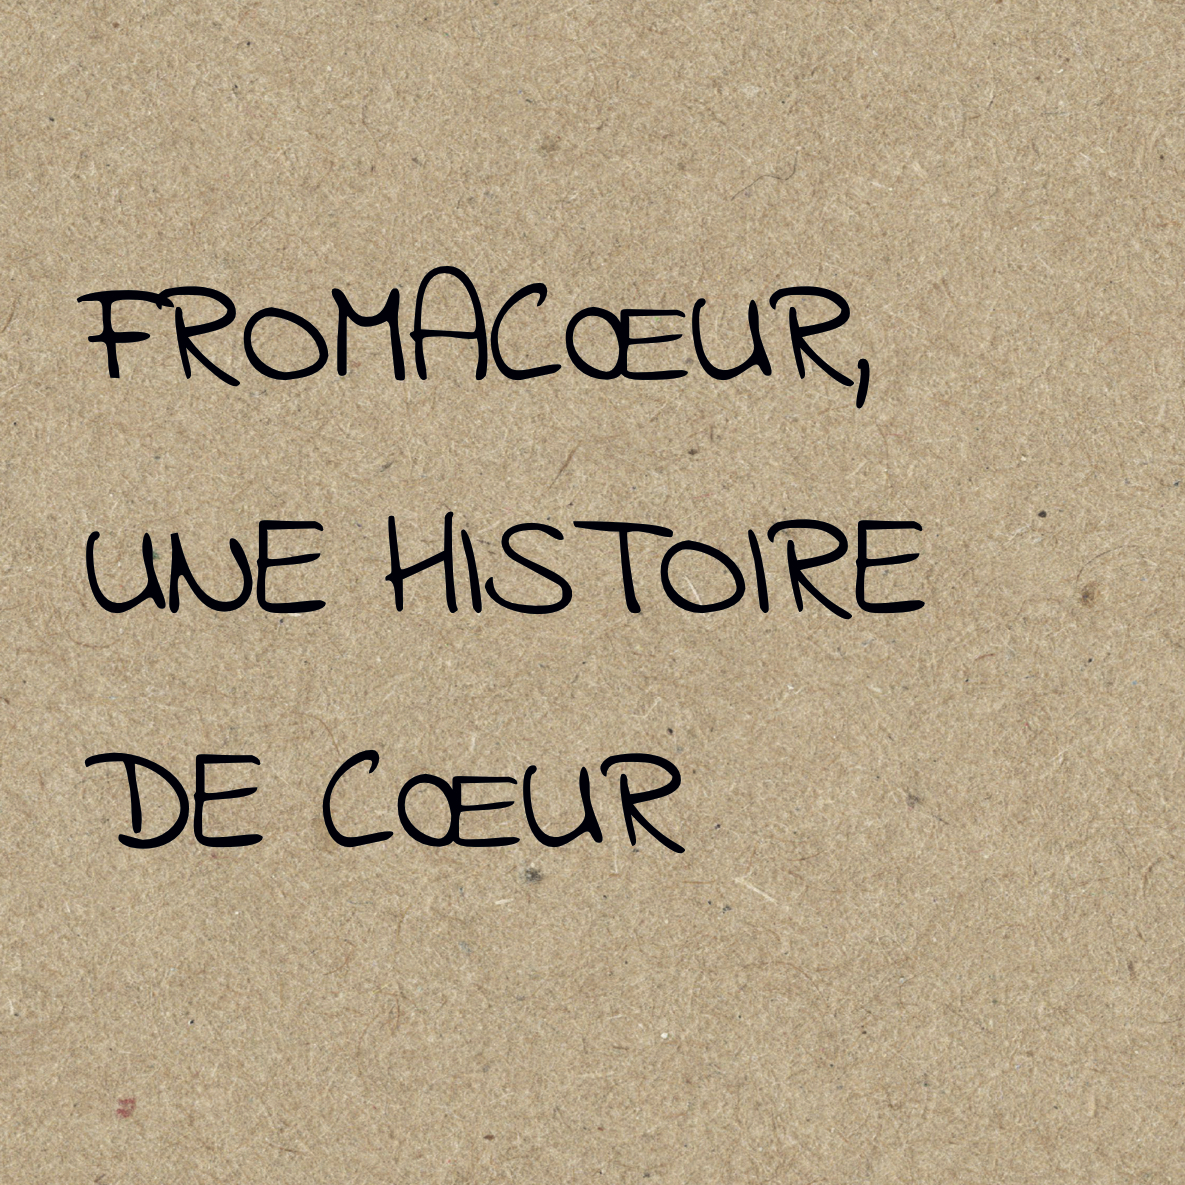 histoire-fromacoeur.jpg